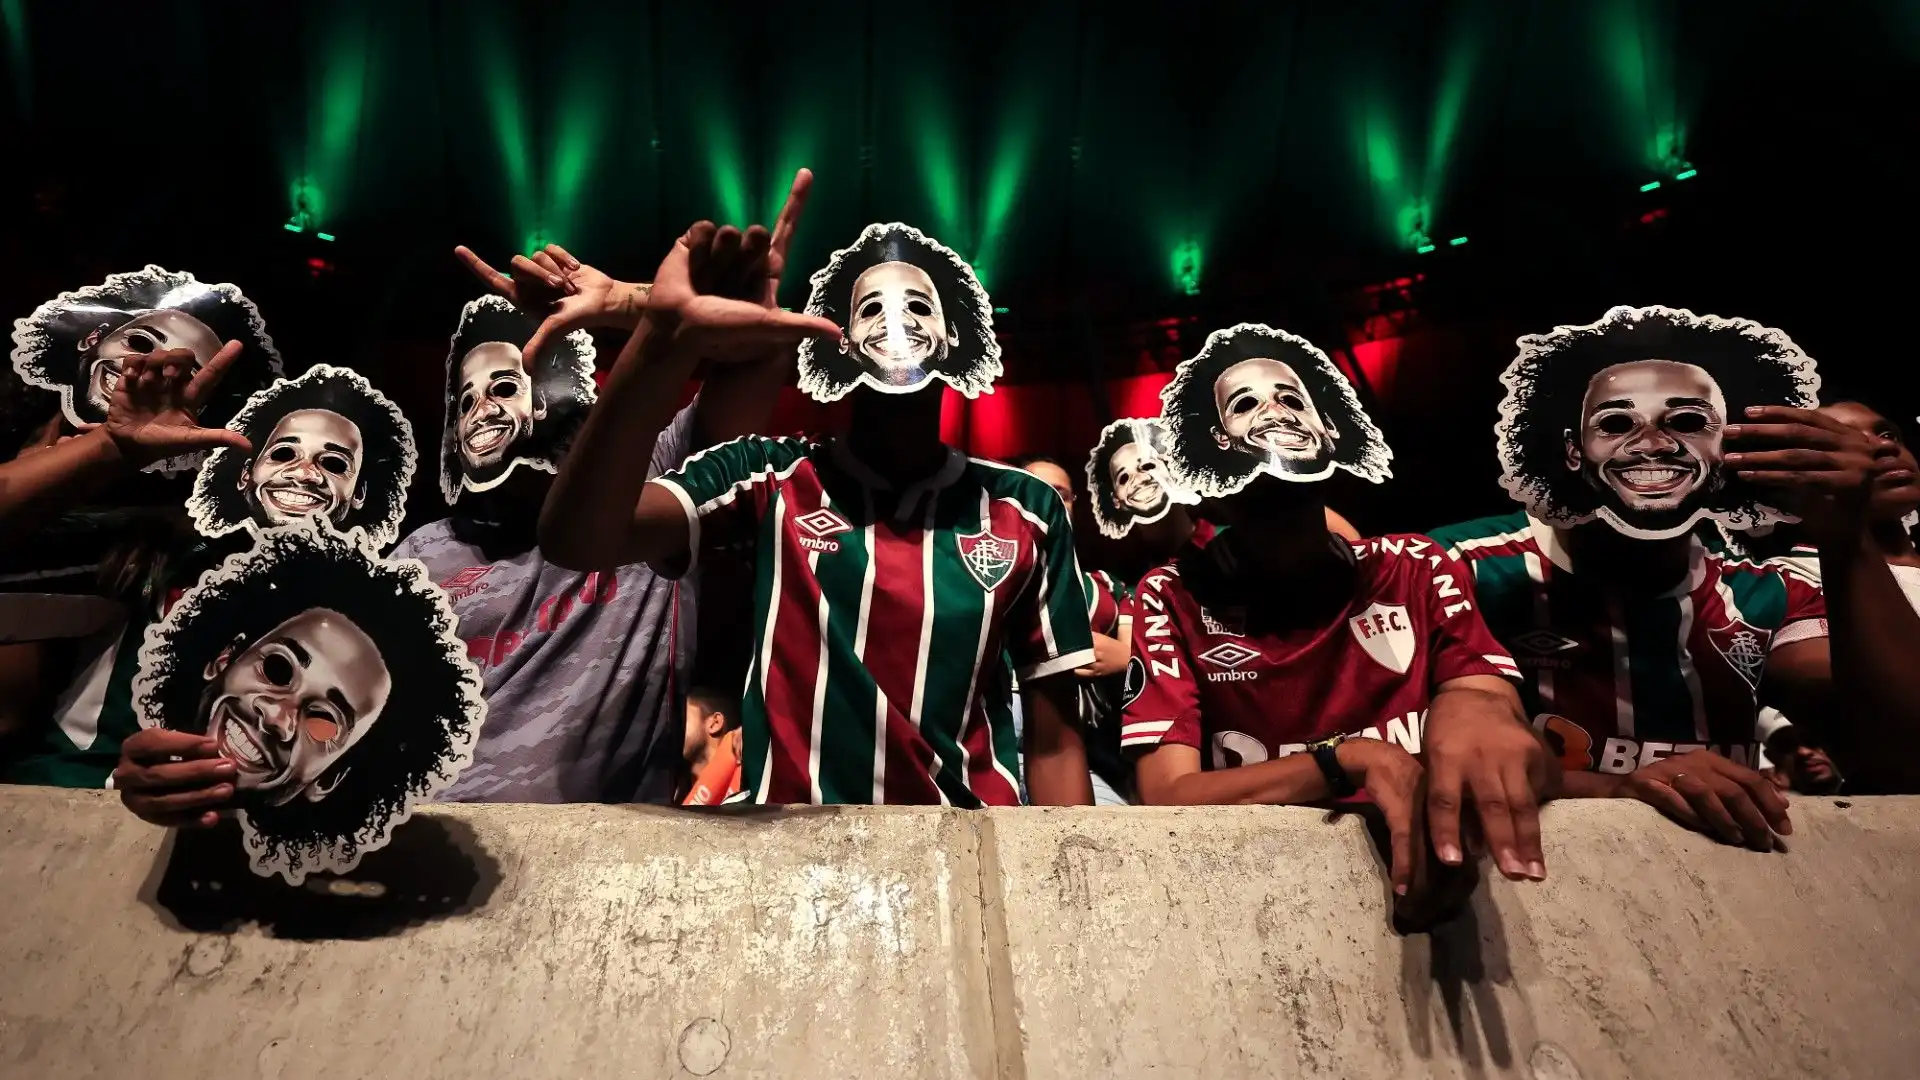 Moltissimi tifosi hanno indossato una maschera con la faccia di Marcelo: molto divertente!